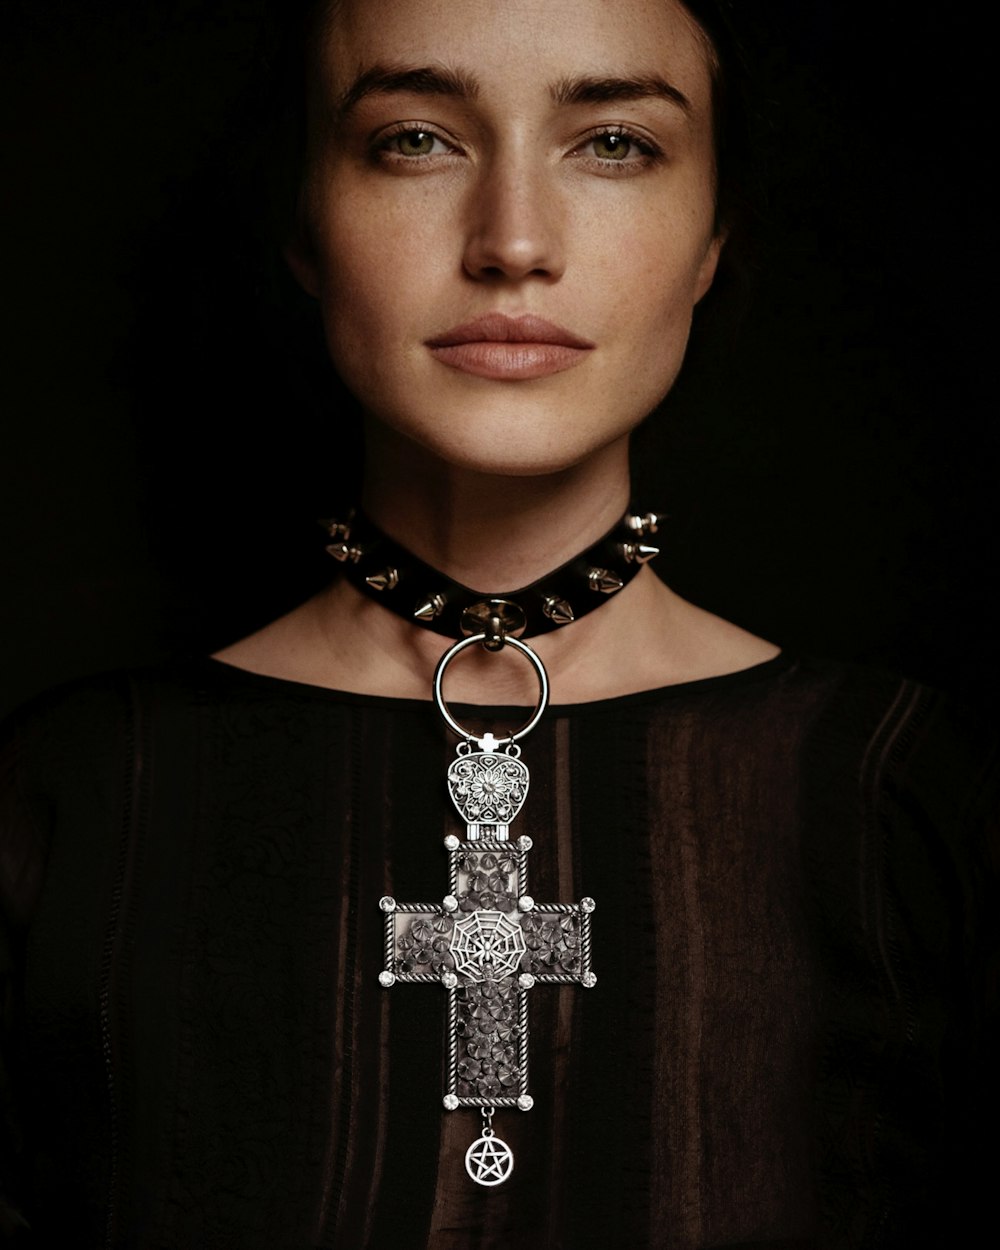 十字架が描かれたネックレスを身に着けている女性